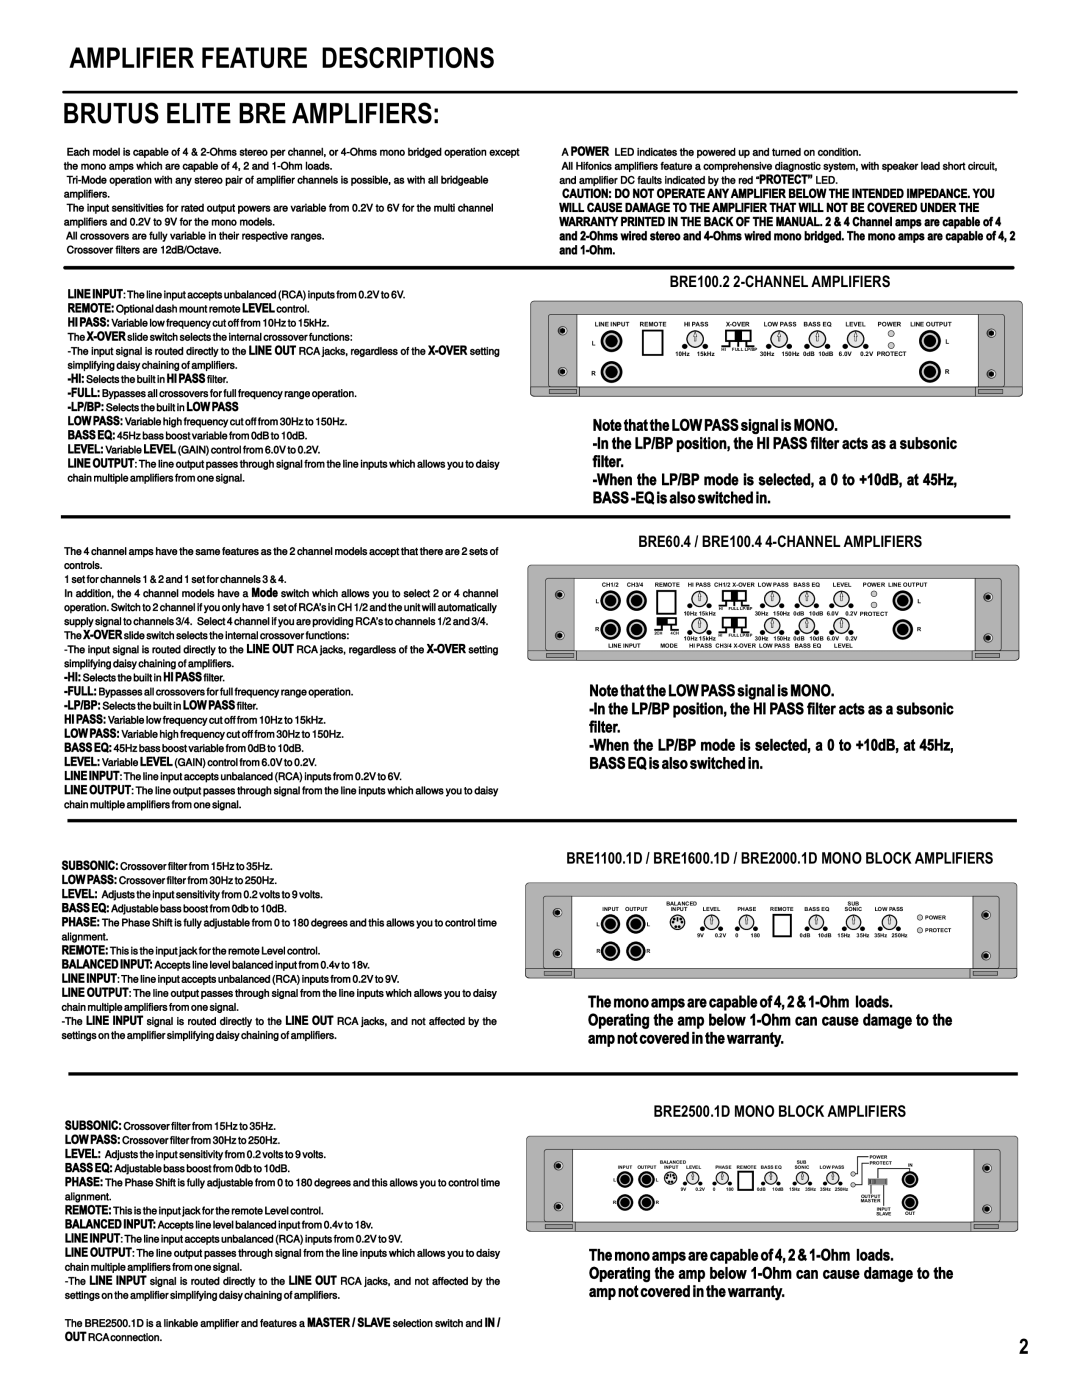 Hifionics BRE60.4, BRE100.2, BRE1600.1D BRE2000.1D, BRE2500.1D Amplifier Feature Descriptions, Brutus Elite Bre Amplifiers 